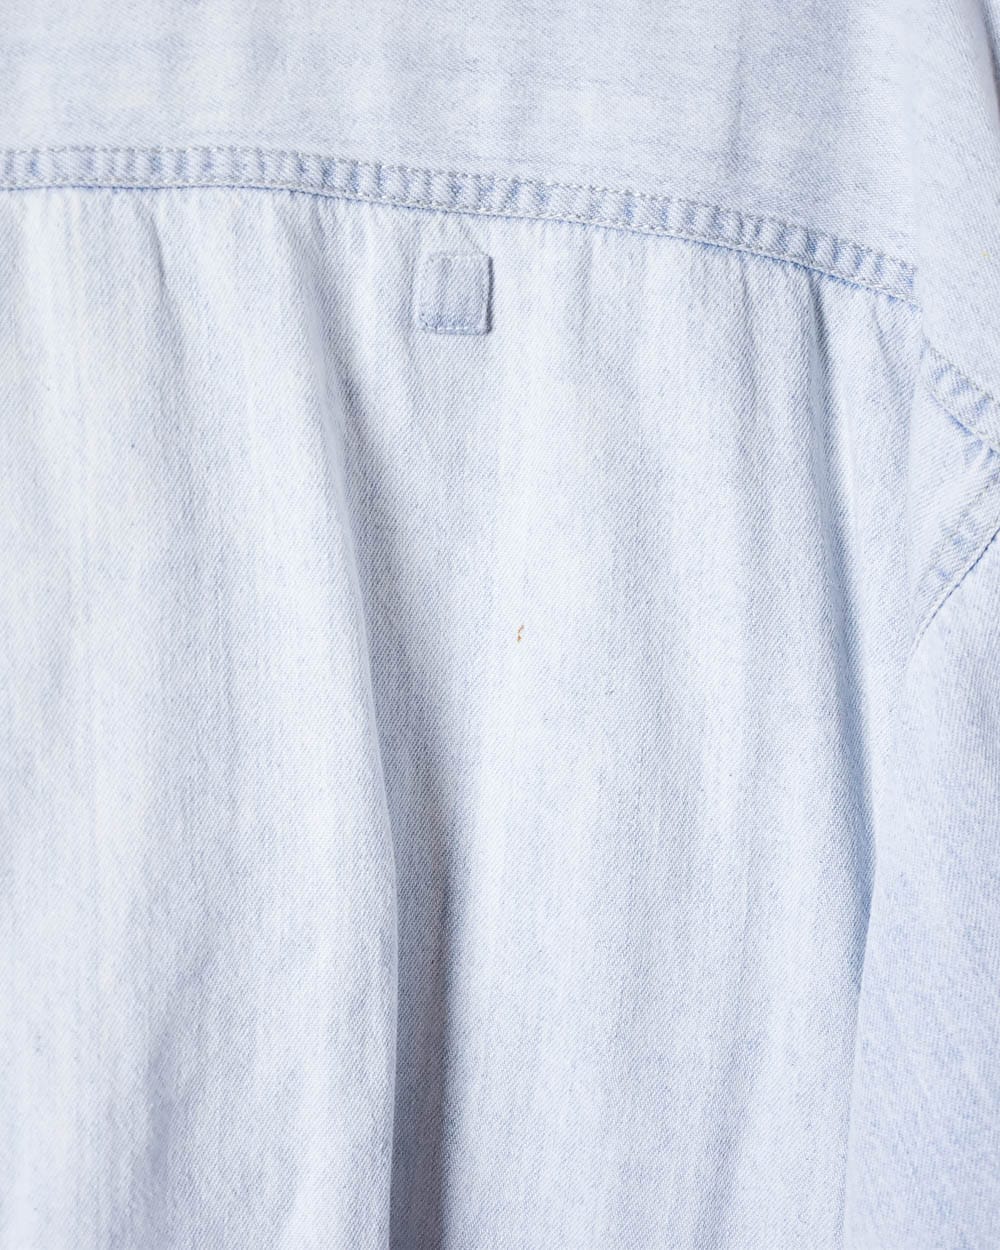 BabyBlue Levi's Denim Shirt - XX-Large